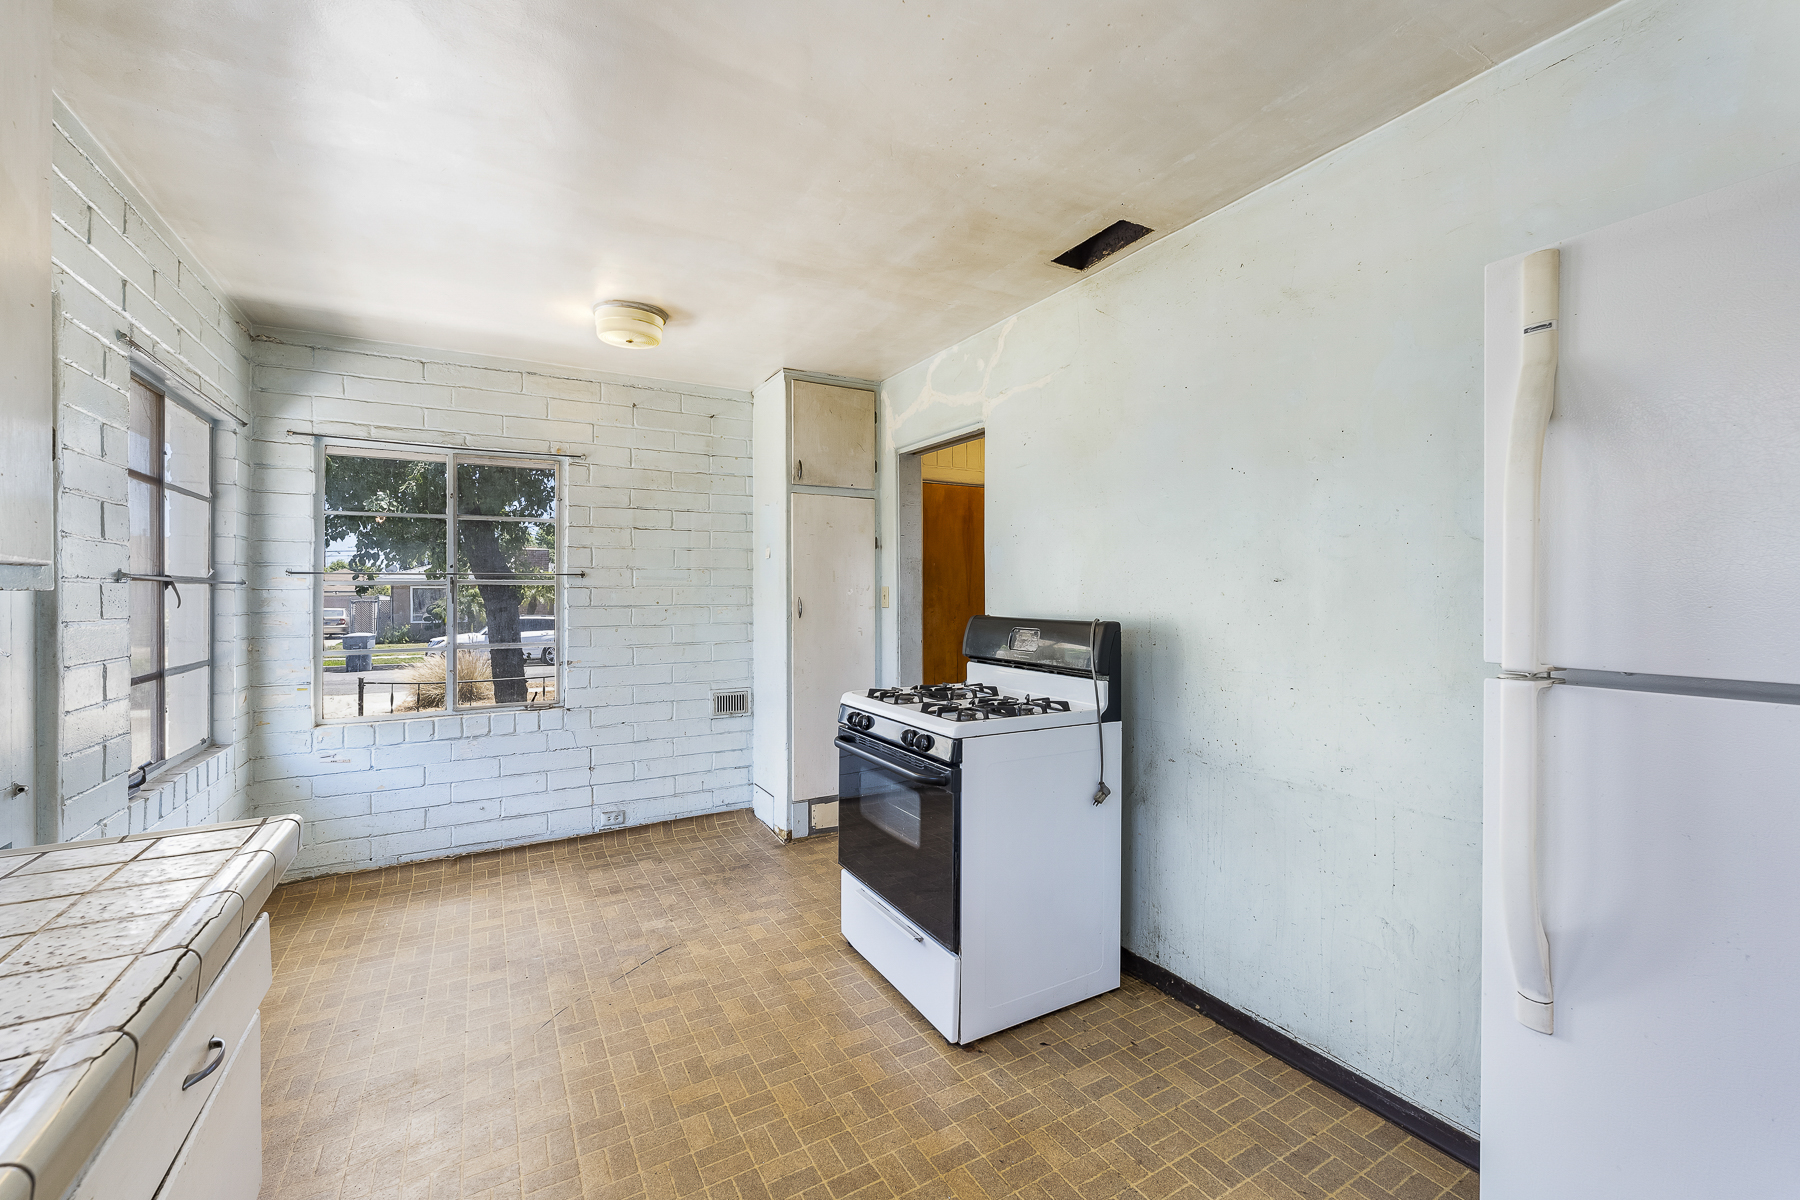 319 E. Francis Ave, La Habra, CA 90631: Interior kitchen and breakfast nook space.